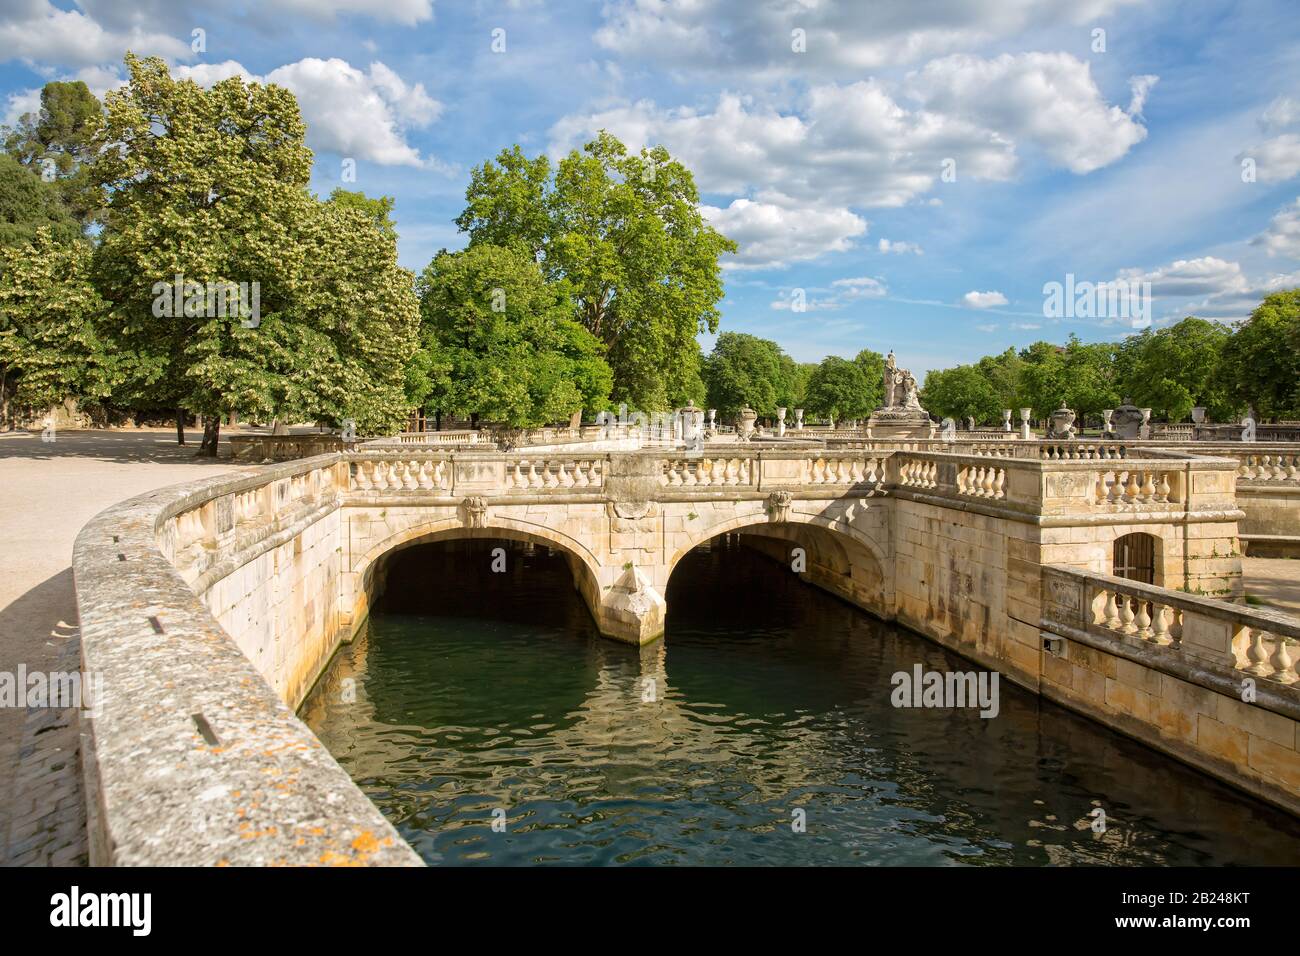 Die Jardins de la Fontaine in Nîmes. Der Park ist ein neoklassizistischer Landschaftsgarten, der um die Quelle der Wasserquelle Gard, Provence, Frankreich herum angelegt wurde Stockfoto